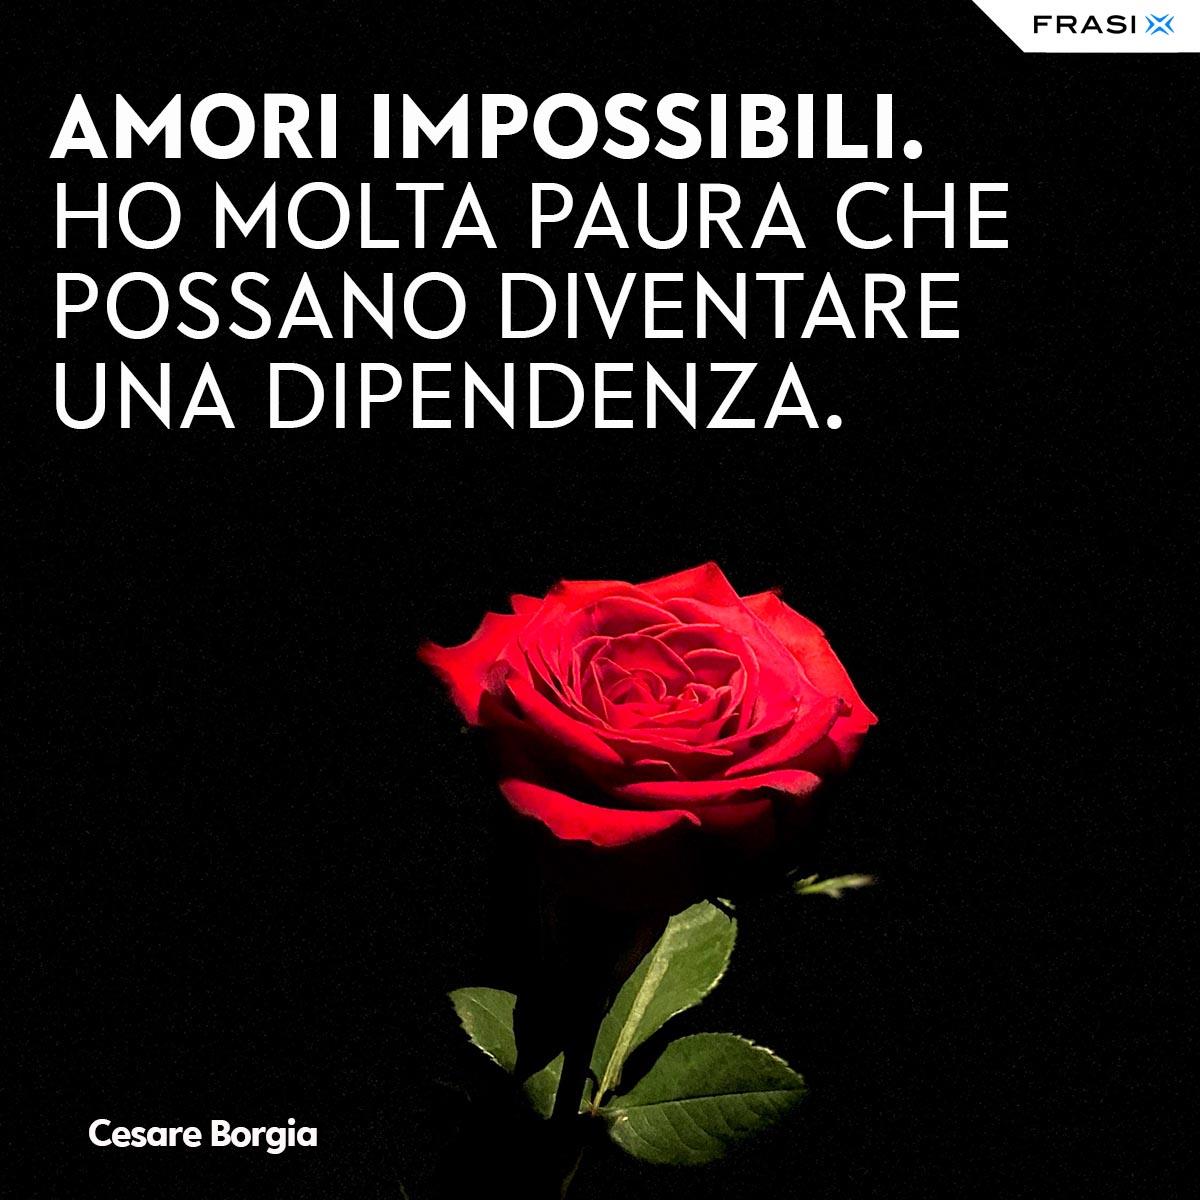 Frasi tumblr amore Cesare Borgia